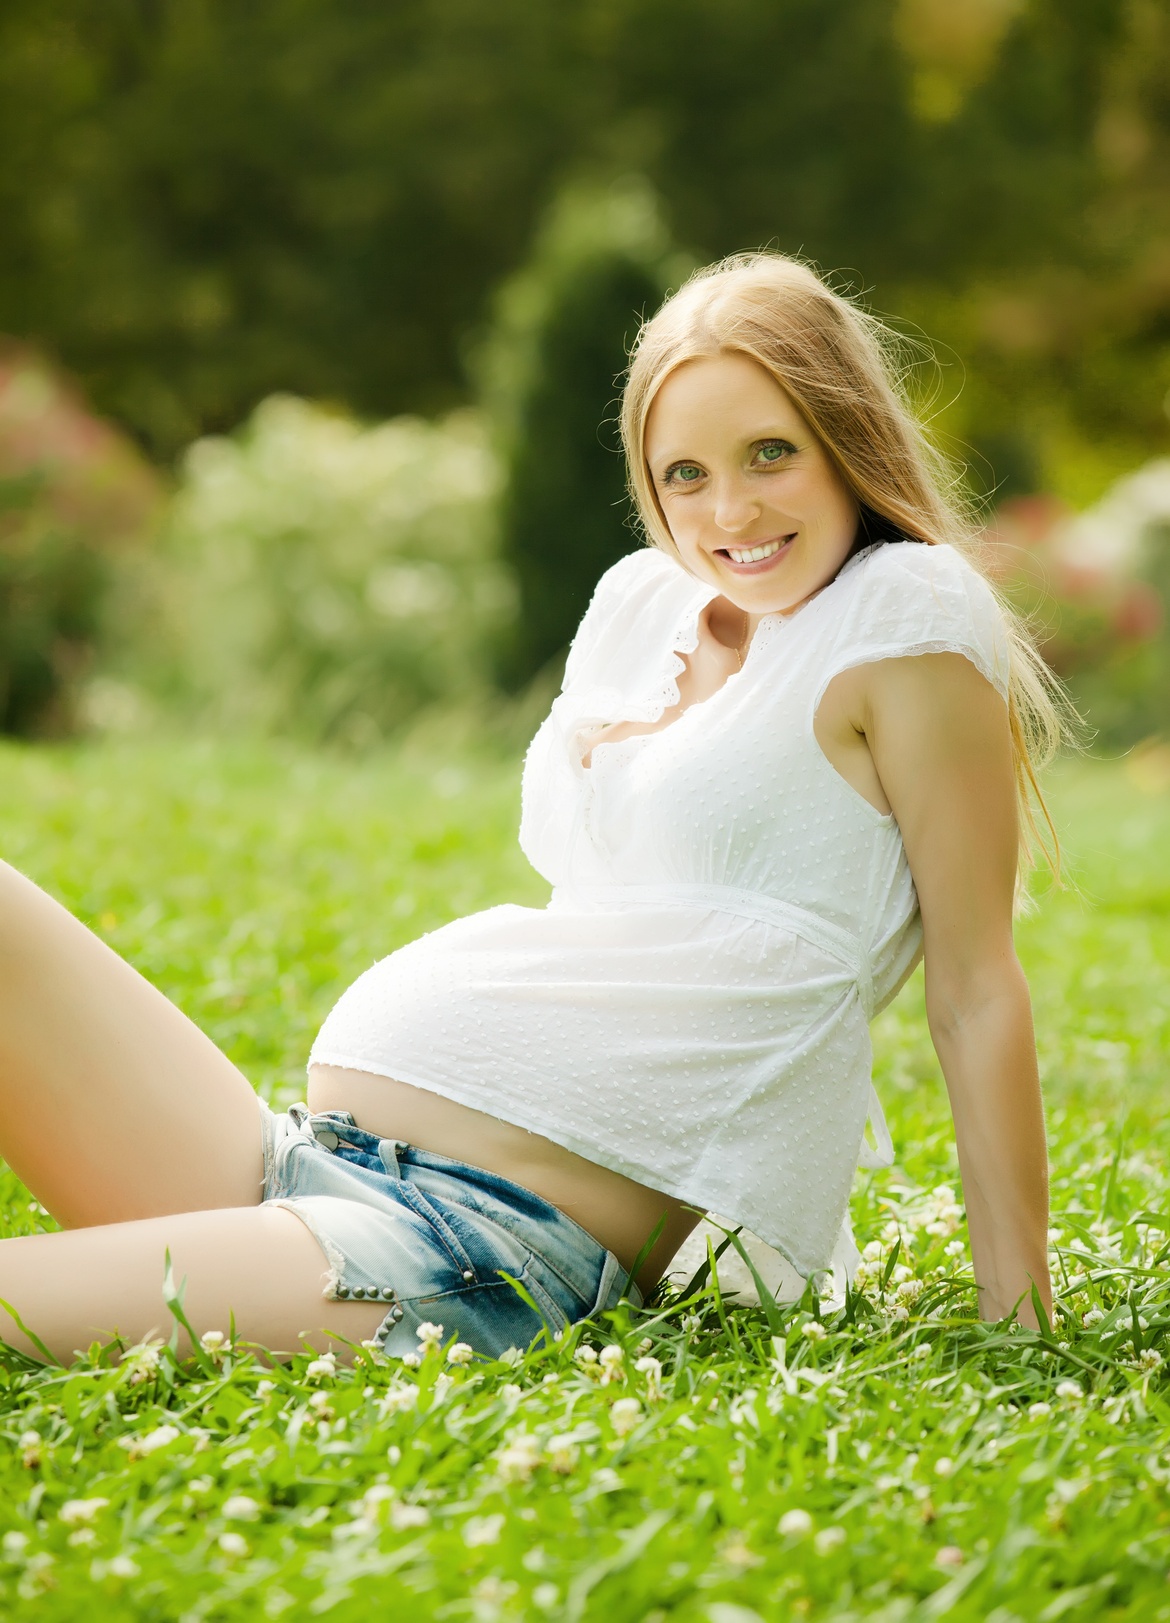 Safe Dental Procedures During Pregnancy